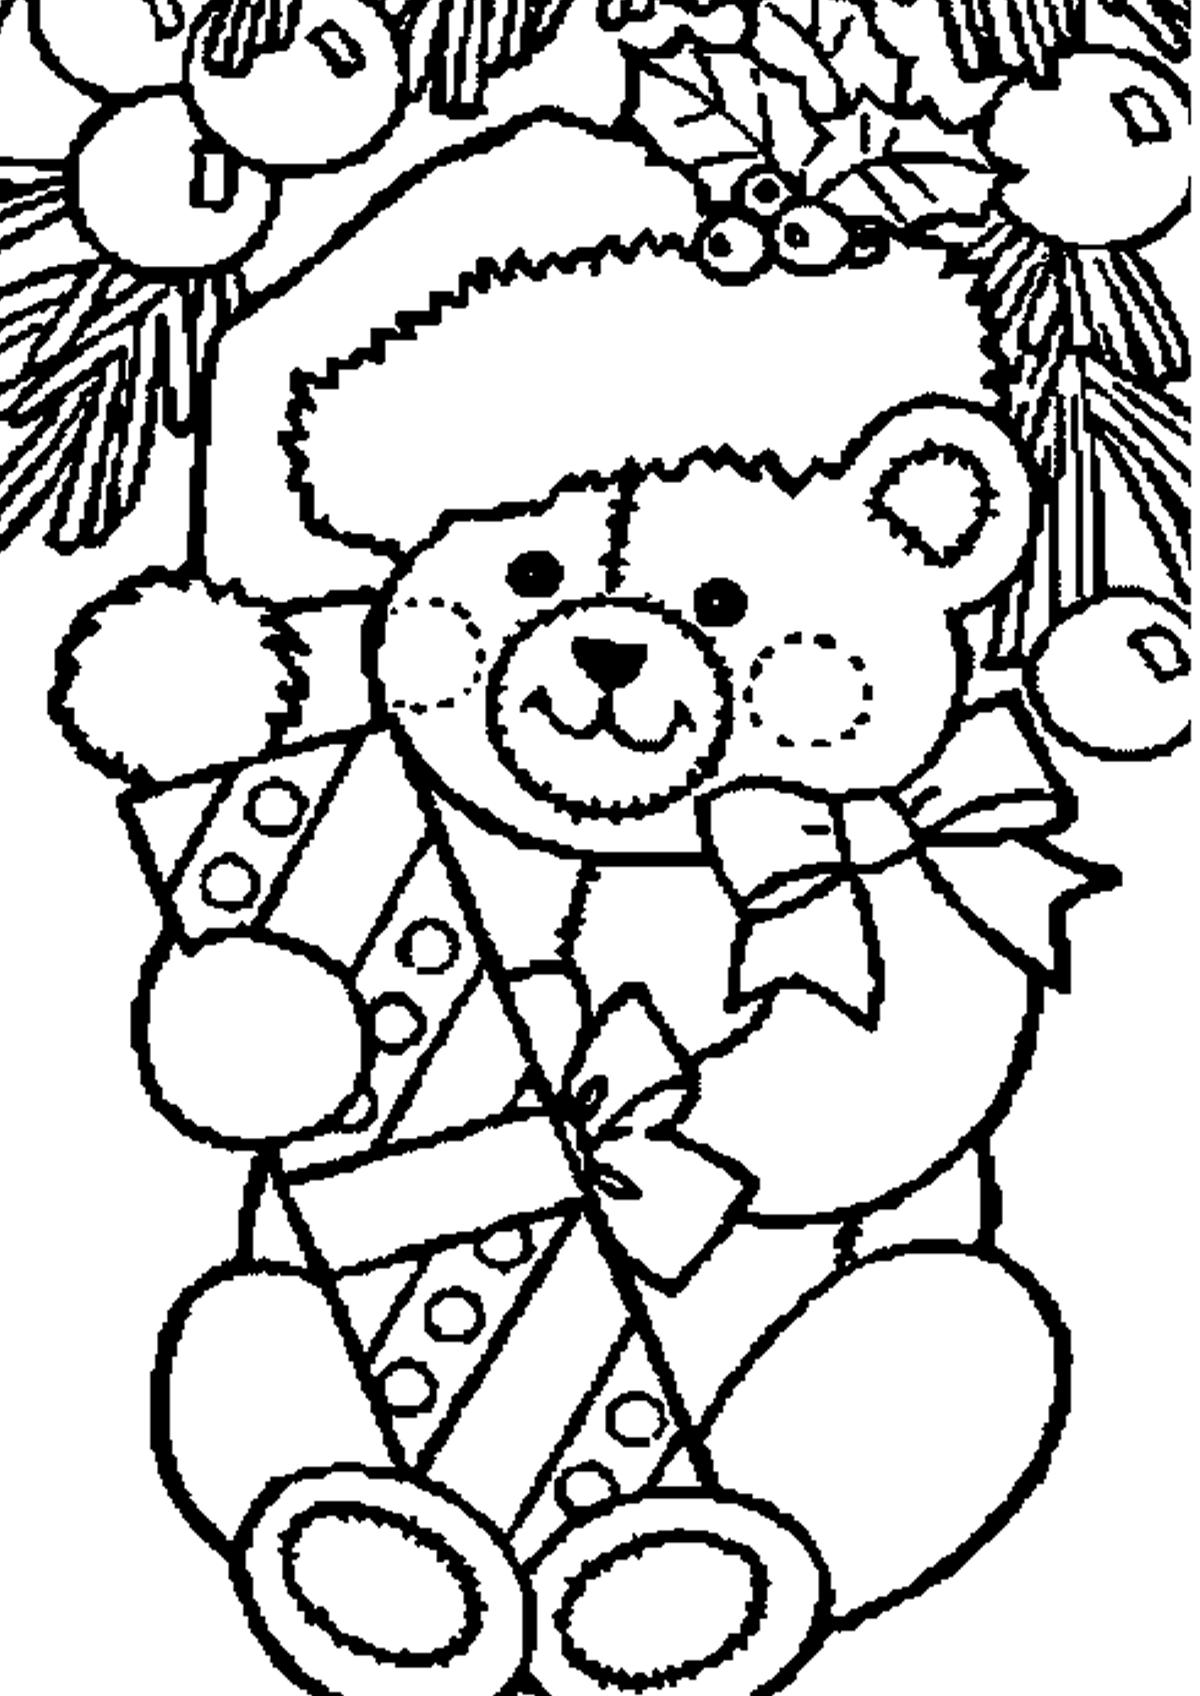 Раскраски с мишками Тедди, милые и красивые раскраски для детей с медвежатами  Раскраска мишка Тедди в подарок на новый год